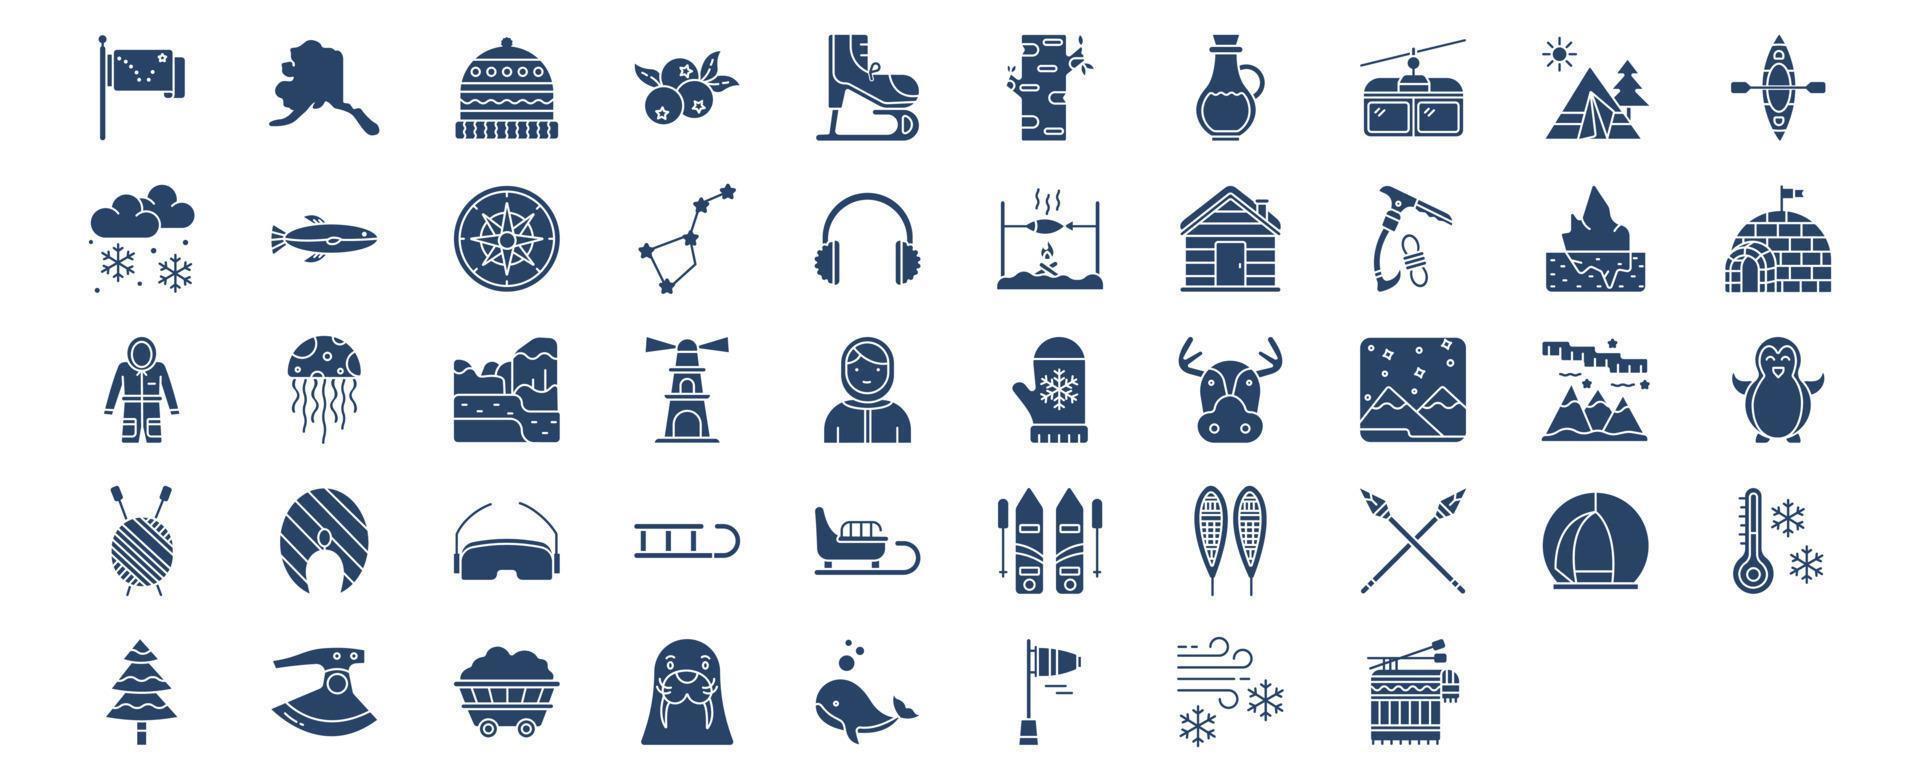 verzameling van pictogrammen verwant naar Alaska, inclusief pictogrammen Leuk vinden camping, sneeuw, sterrenbeeld, iglo en meer. vector illustraties, pixel perfect reeks